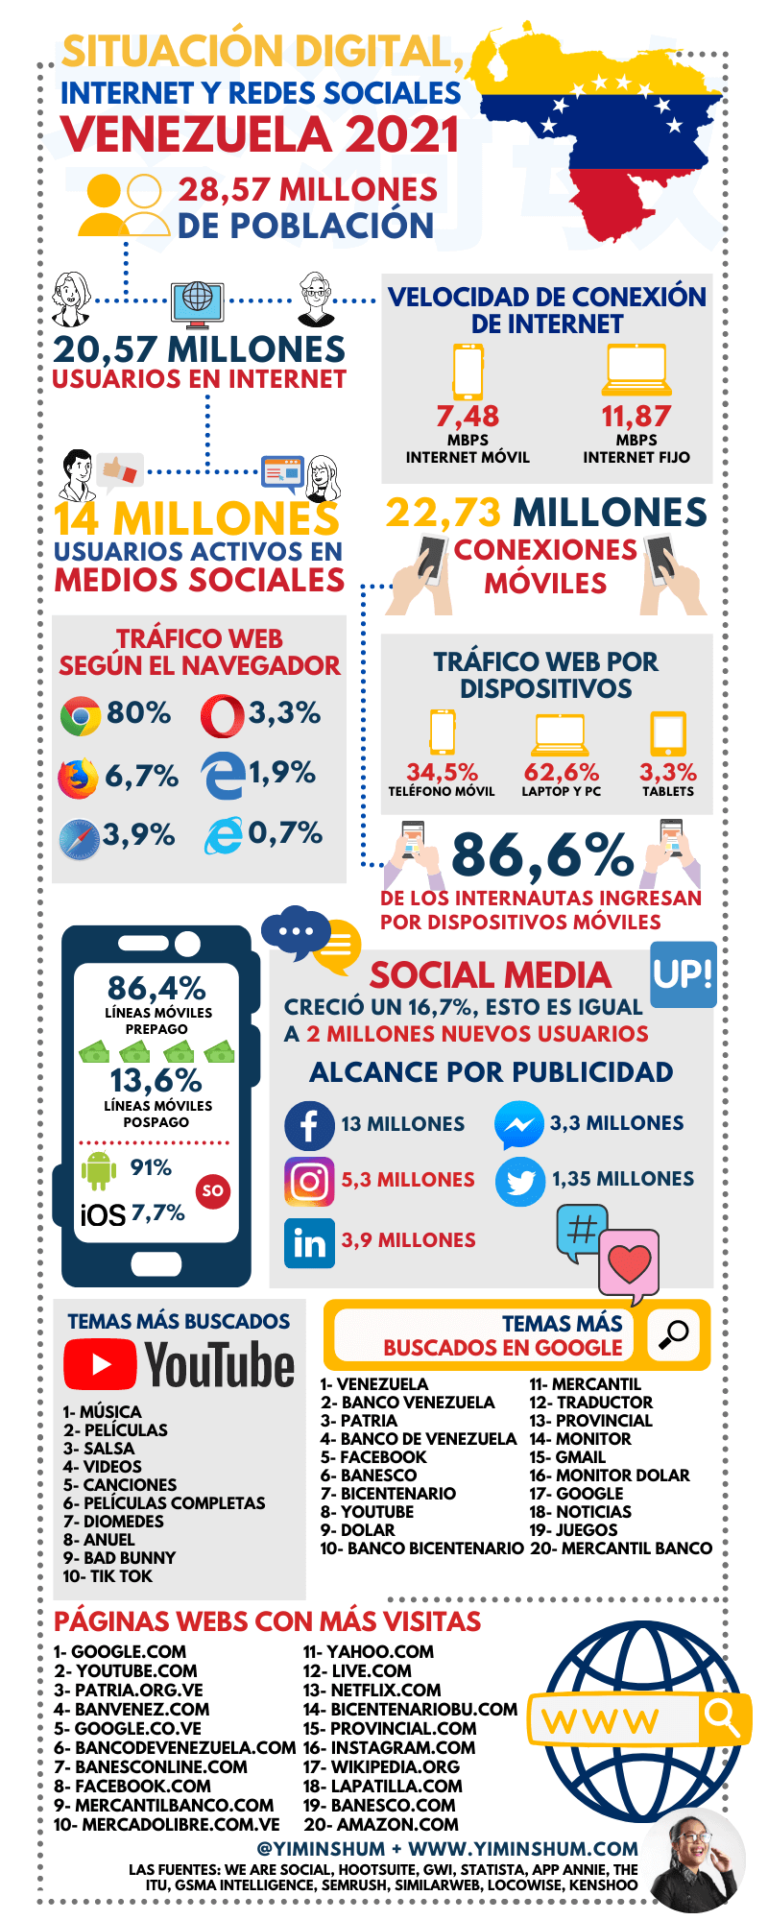 Internet y redes sociales en Venezuela 2021 #infografia #infographic #socialmedia